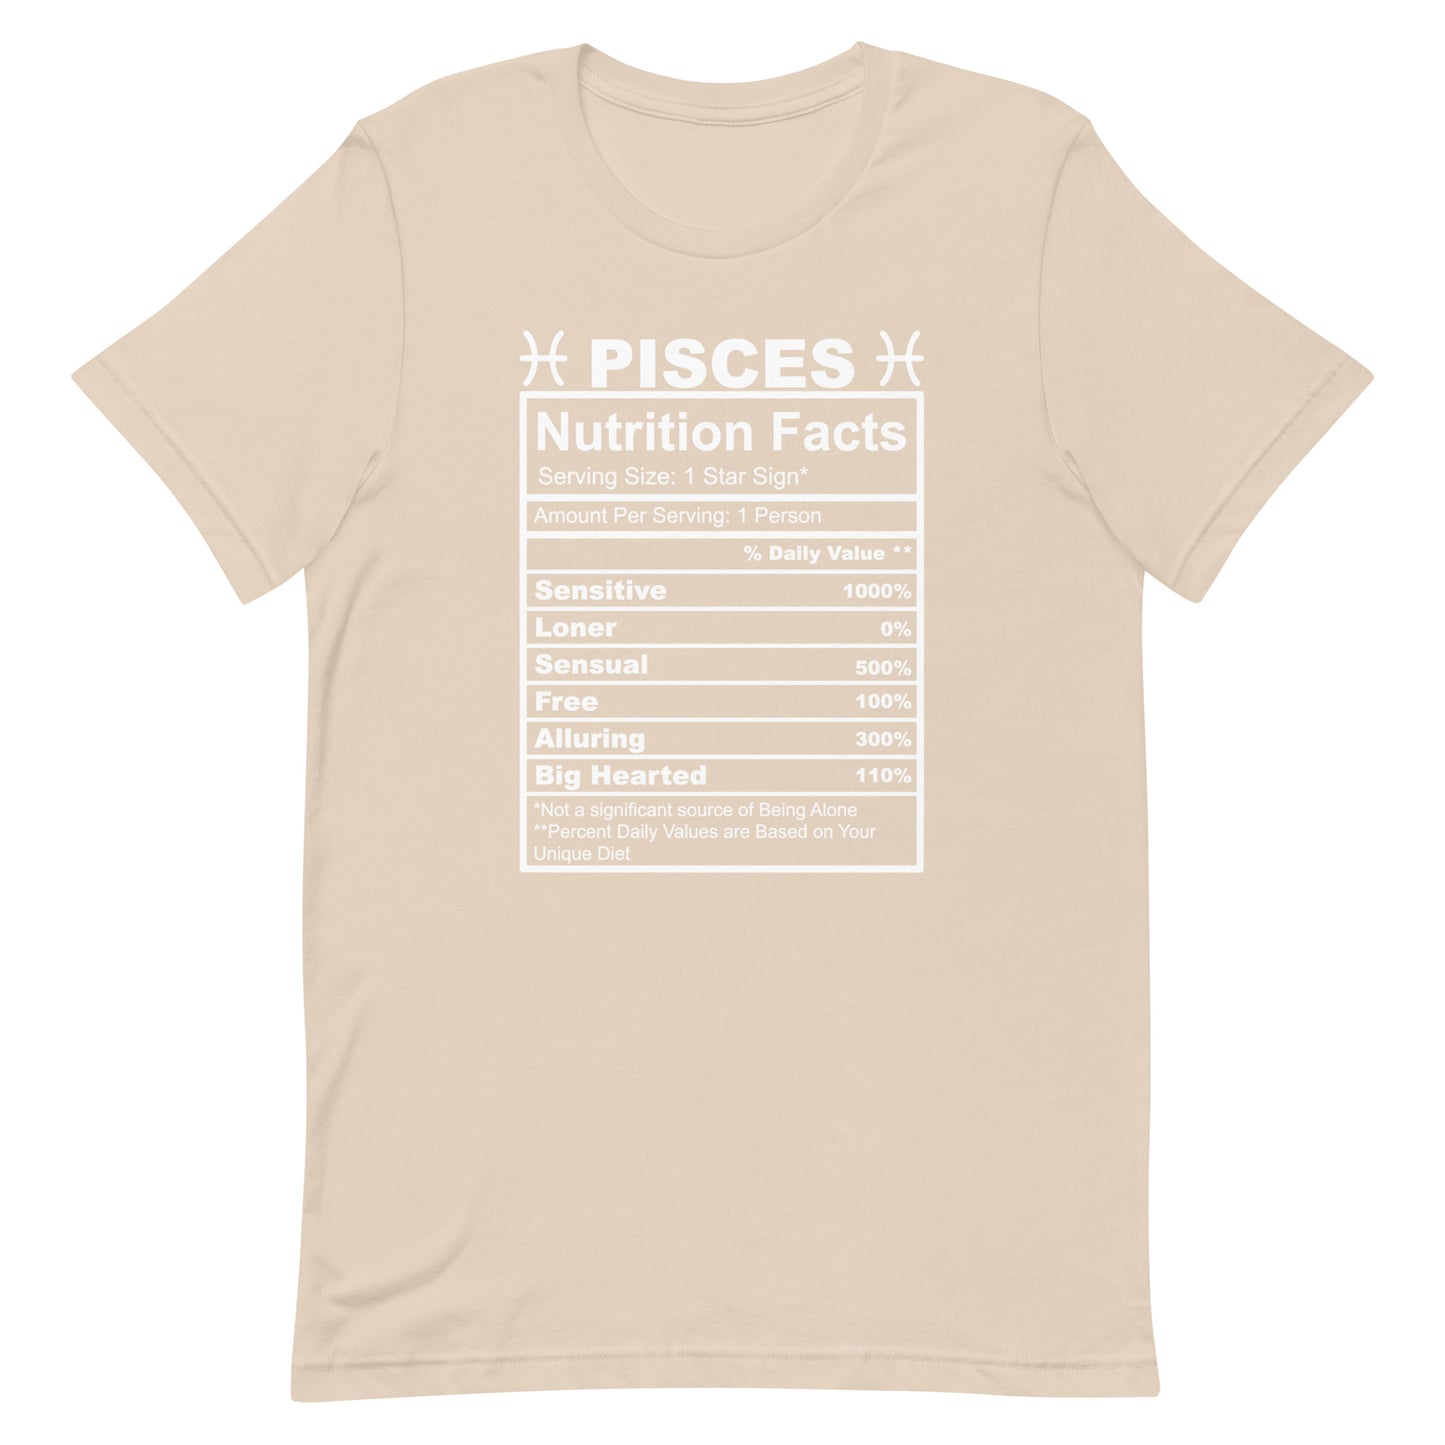 PISCES - L-XL - Unisex T-Shirt (white letters)